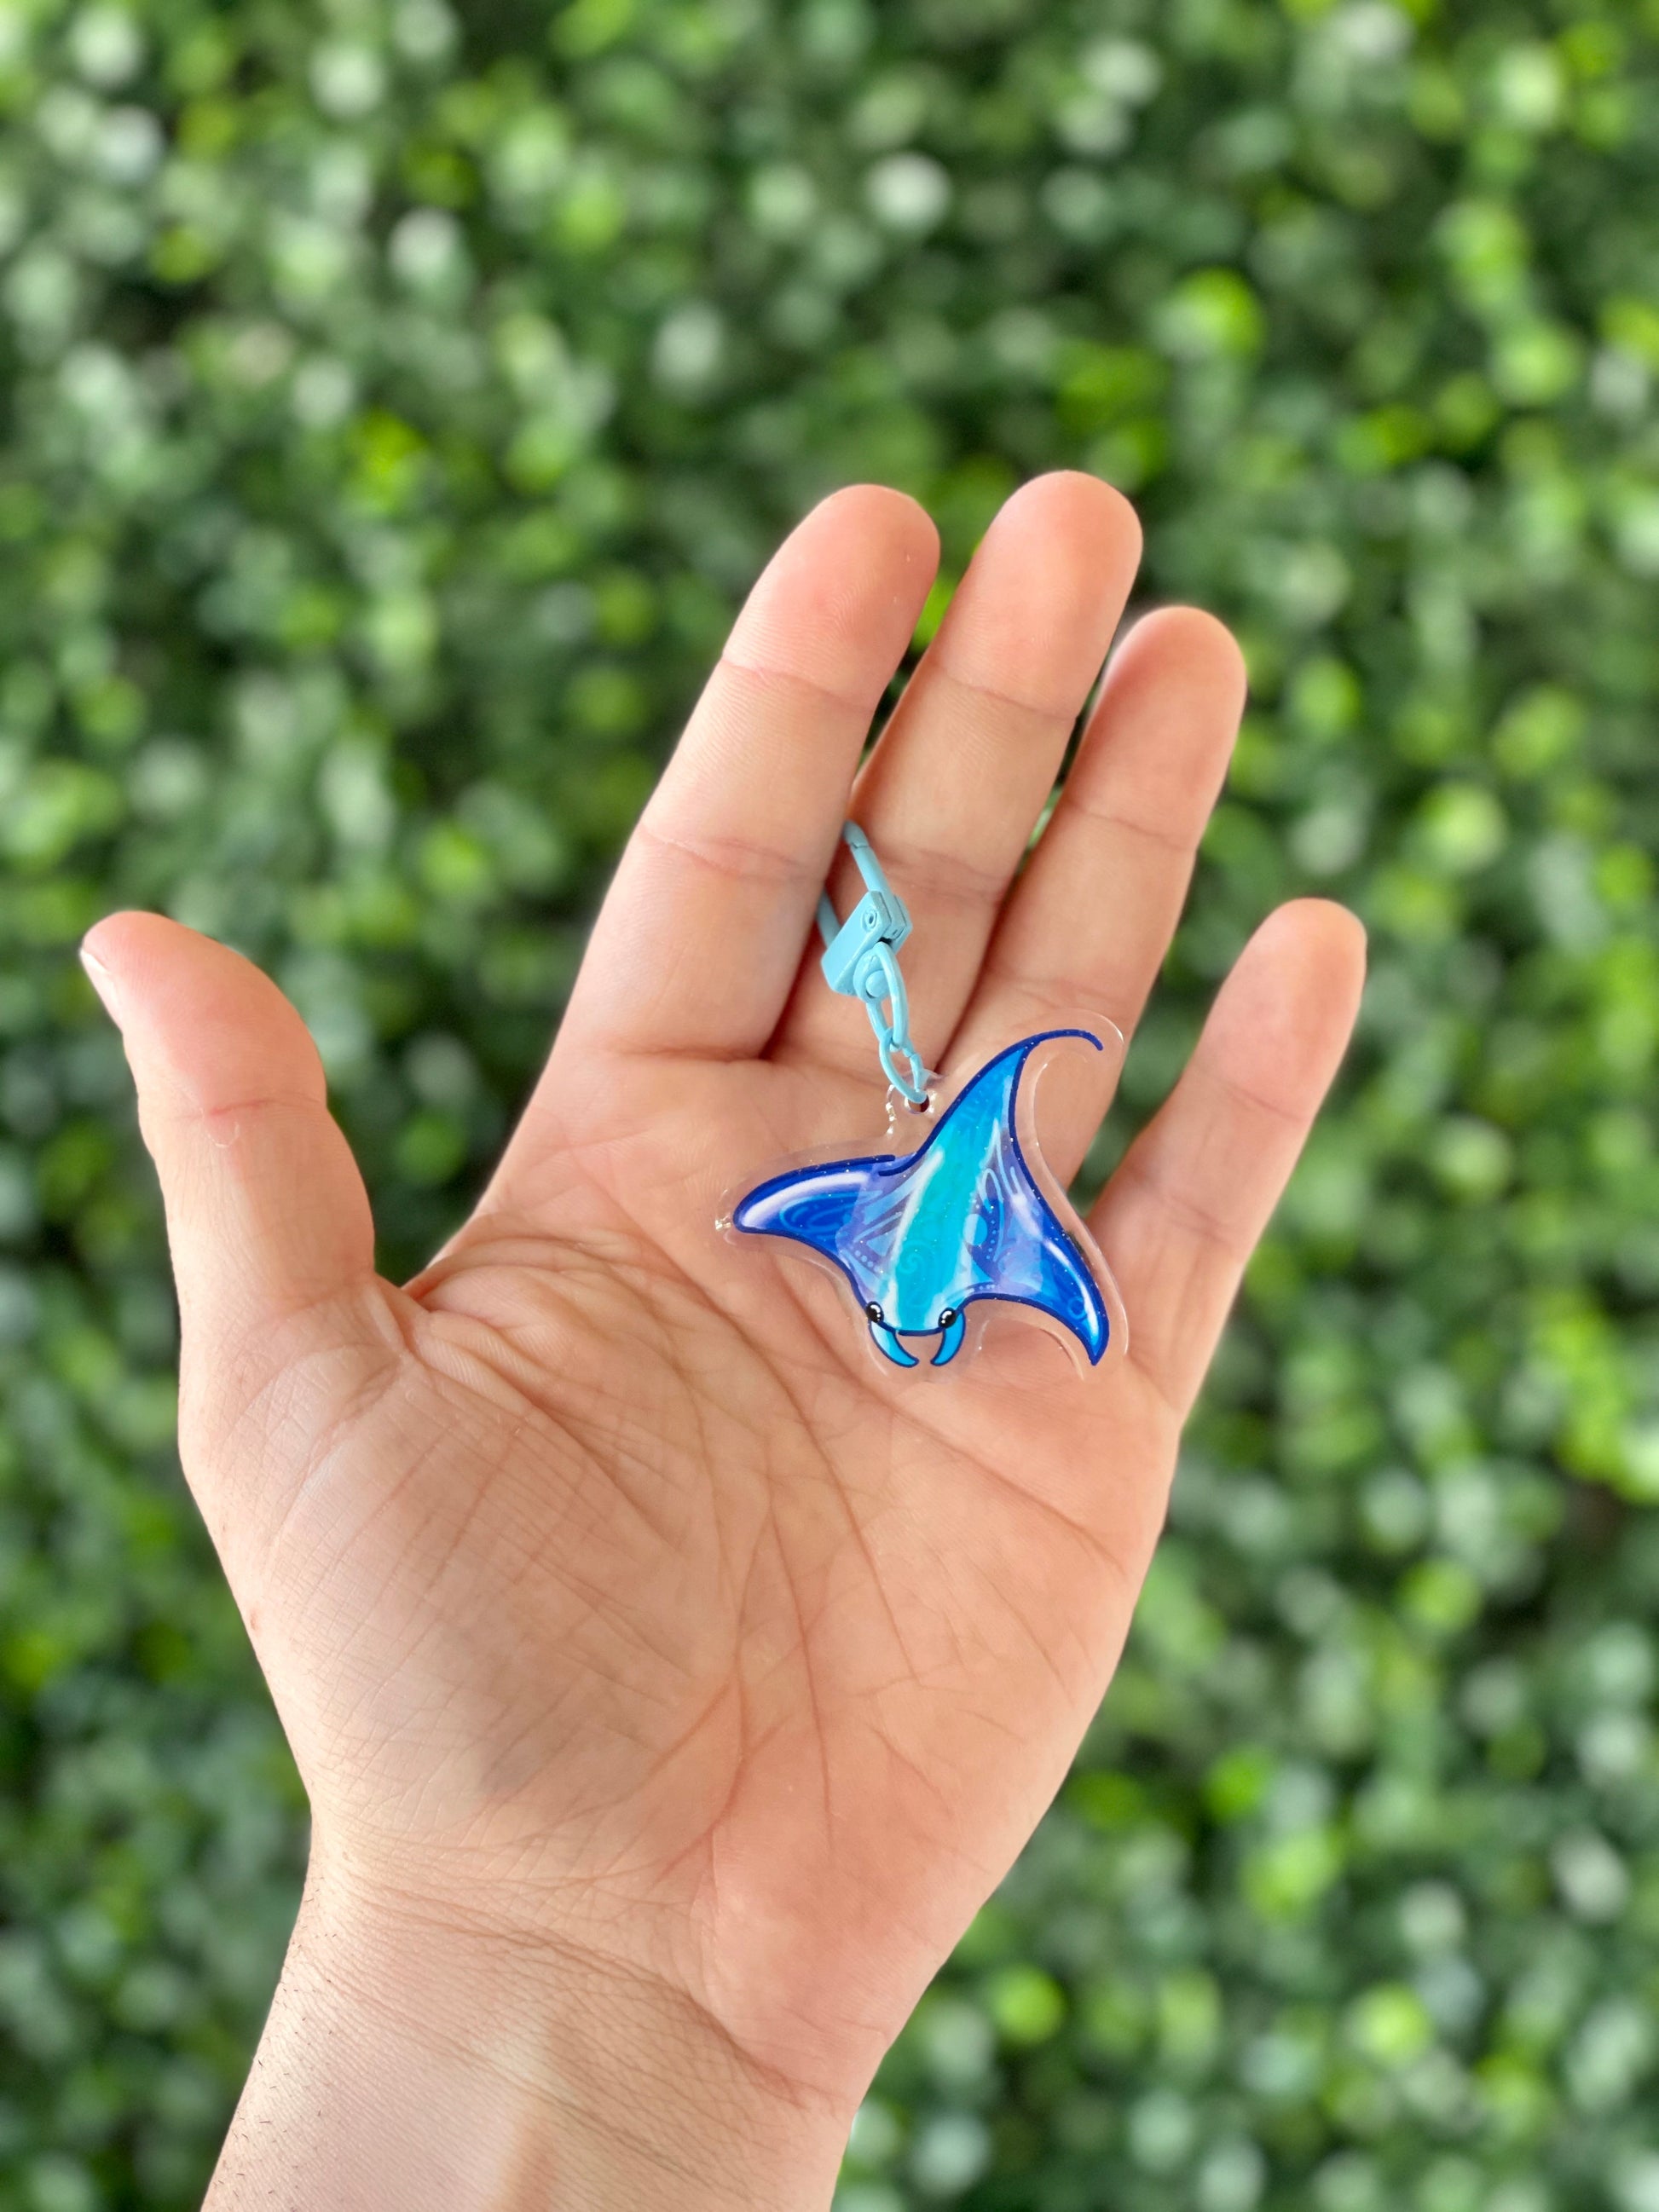 Manta Ray | Acrylic Keychain - 3D Props Play